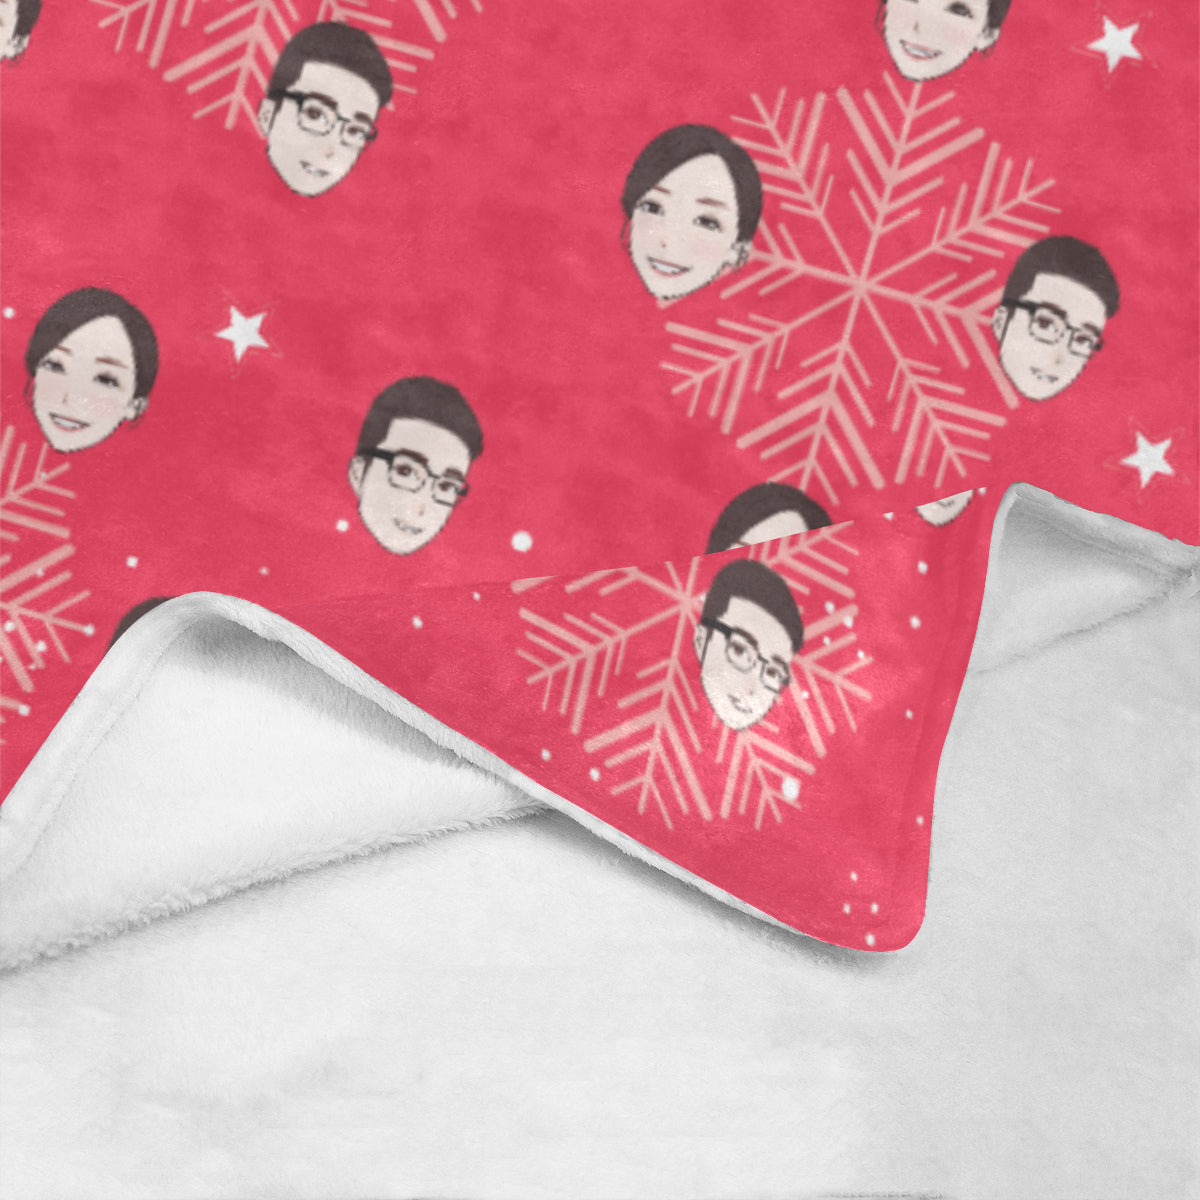 聖誕禮物定製-客製化插畫毛毯-雪花(紅)款式 Christmas Blanket (Red)  Custom Blanket with tailor-made illustration. - HKGIFTFORU